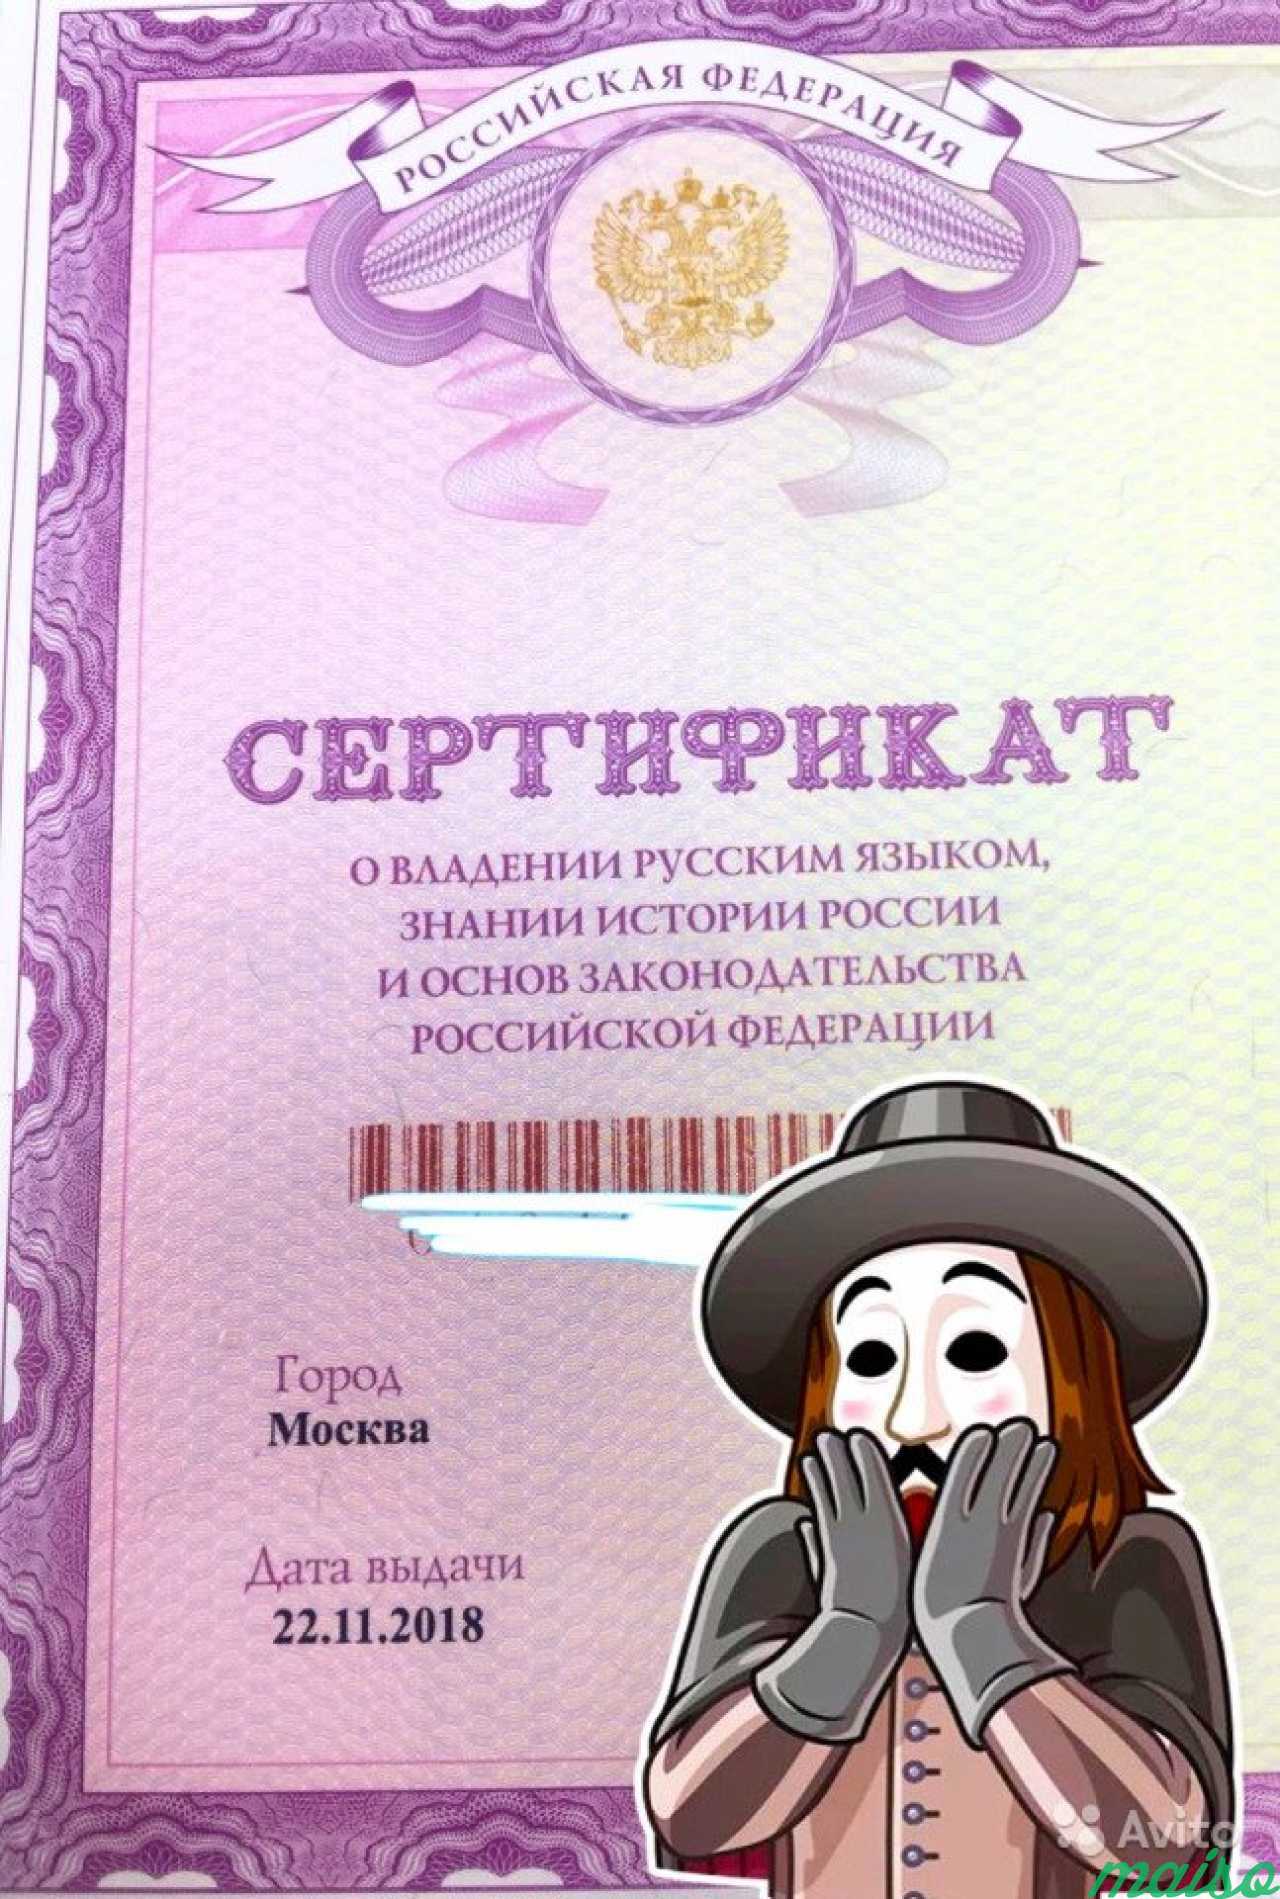 Сертификат о знании русского языка на рвп, внж в Санкт-Петербурге. Фото 1